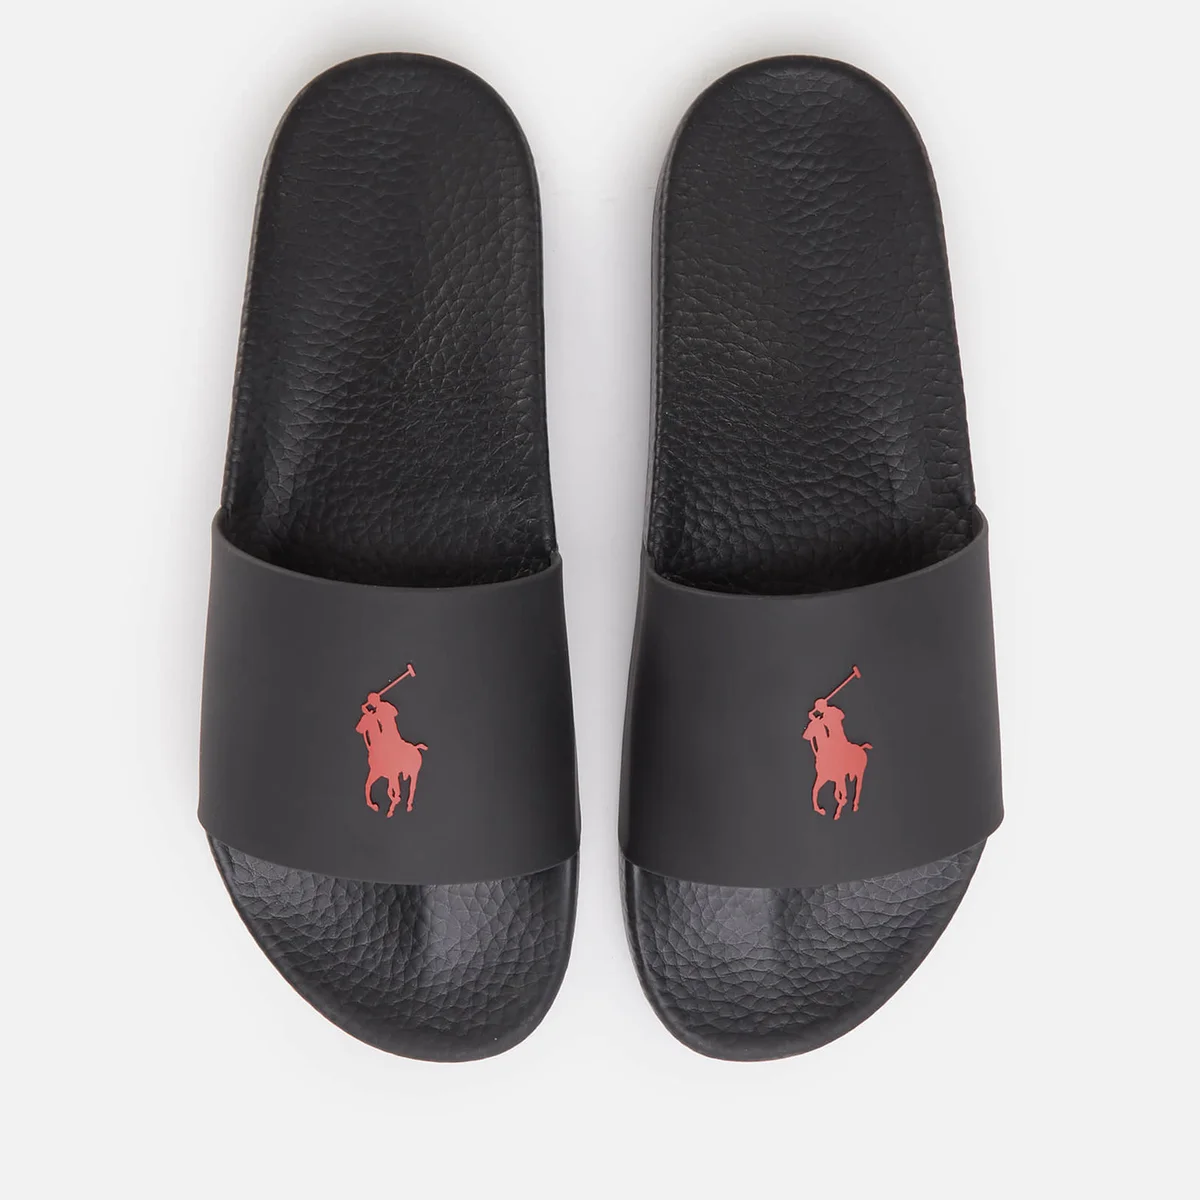 Polo Ralph Lauren Men's Pp Slide Sandals - Black/Red PP Image 1